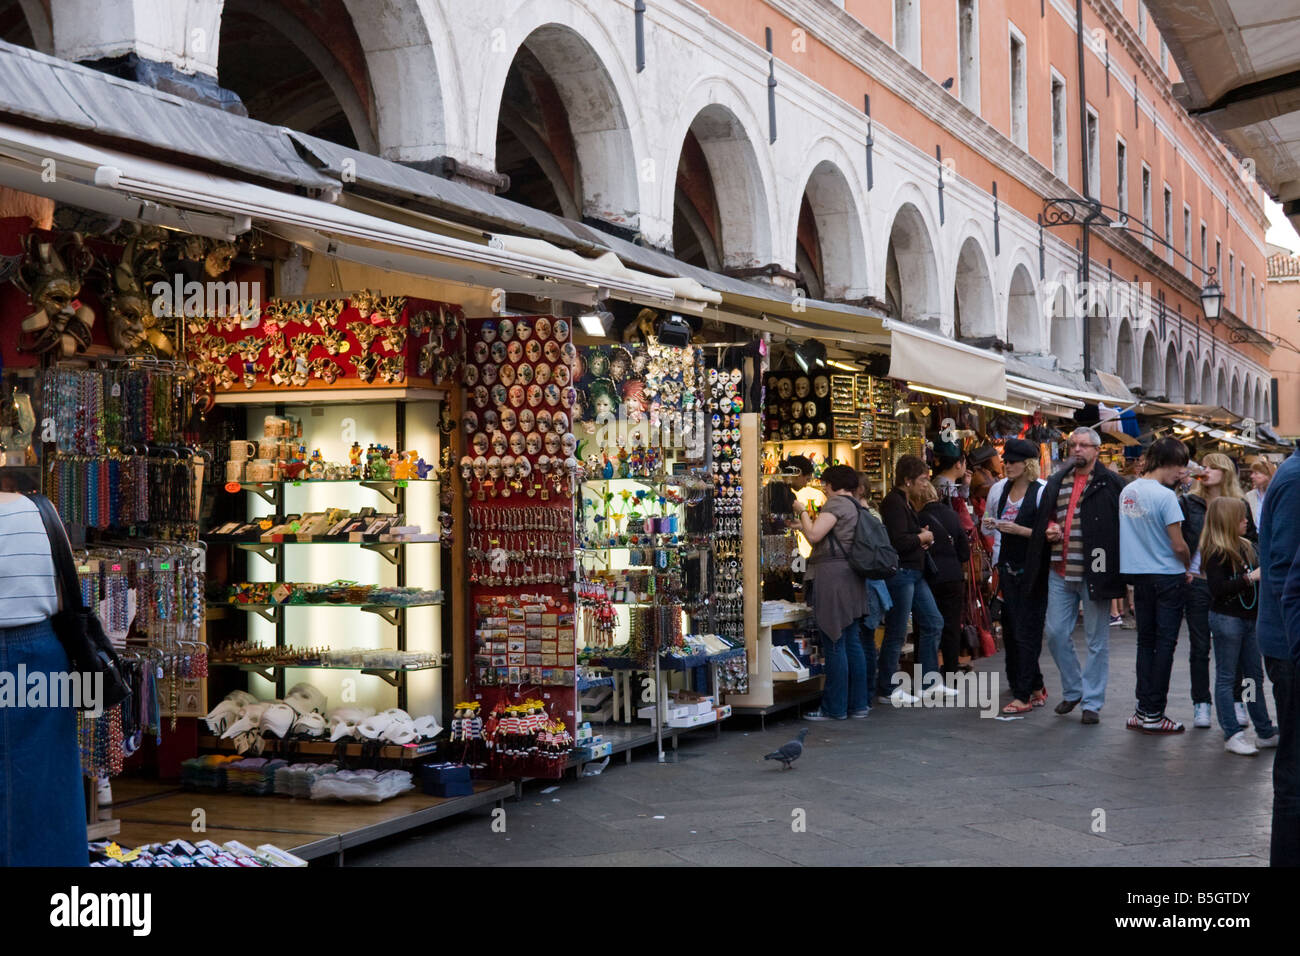 Street Market Venice Italy EU Europe Stock Photo